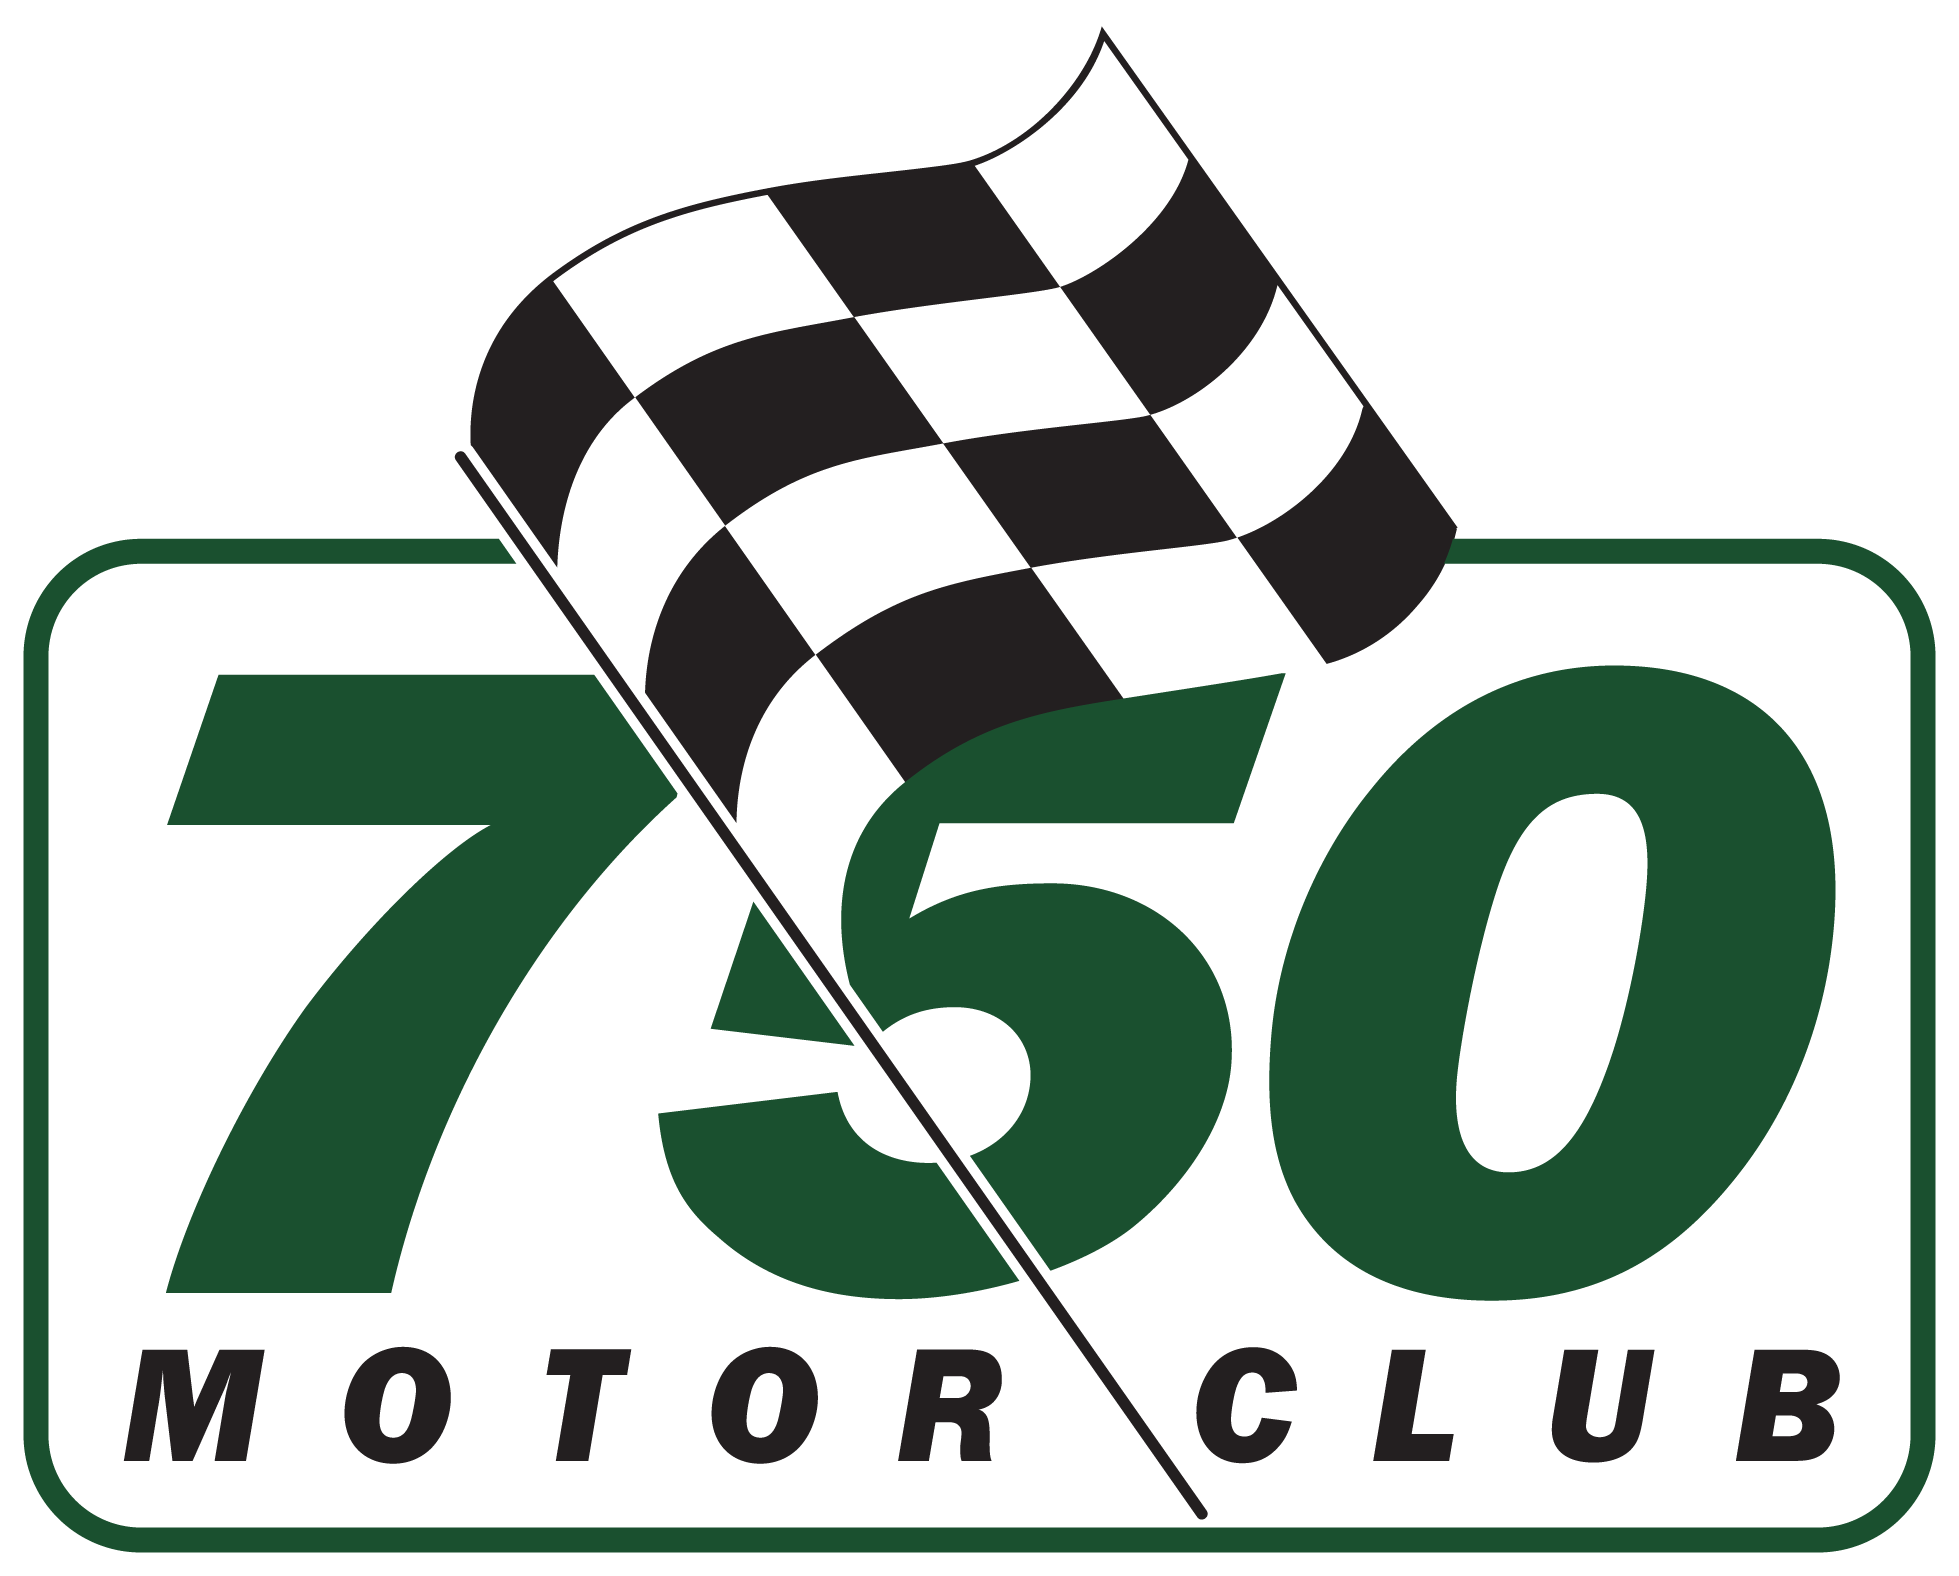 750 Motor Club